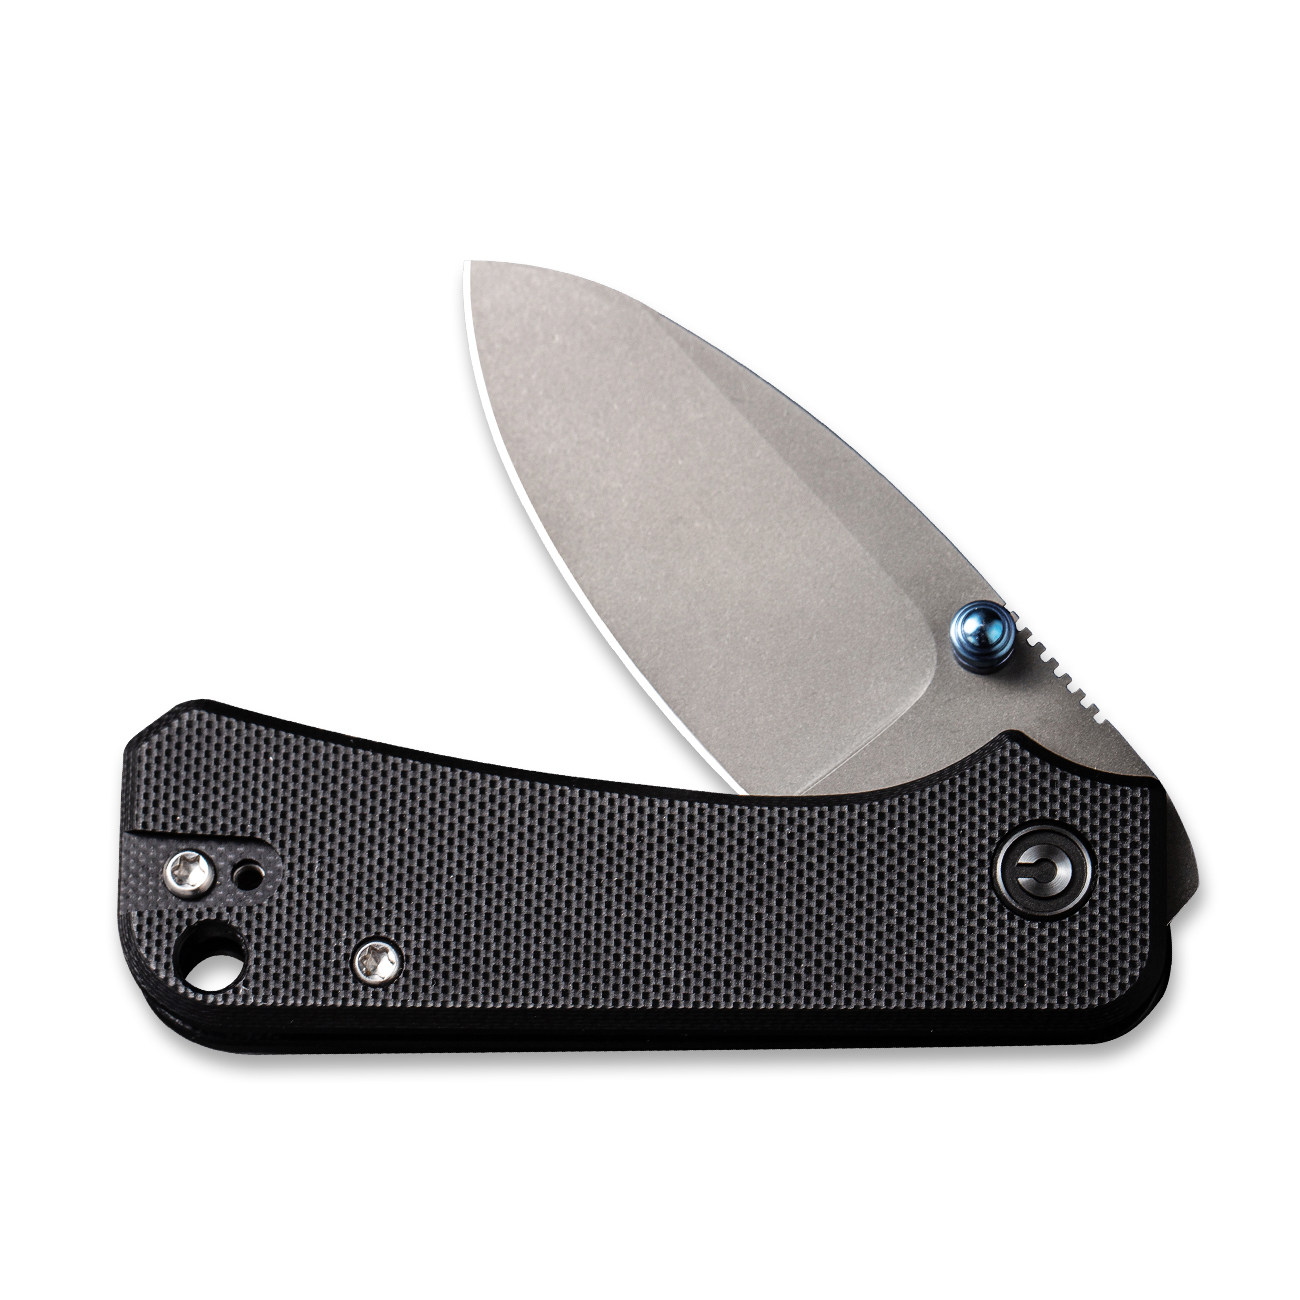 CIVIVI Baby Banter Liner Lock C19068S-1 Knife Nitro-V Stainless Steel Black G10 Pocket Knives